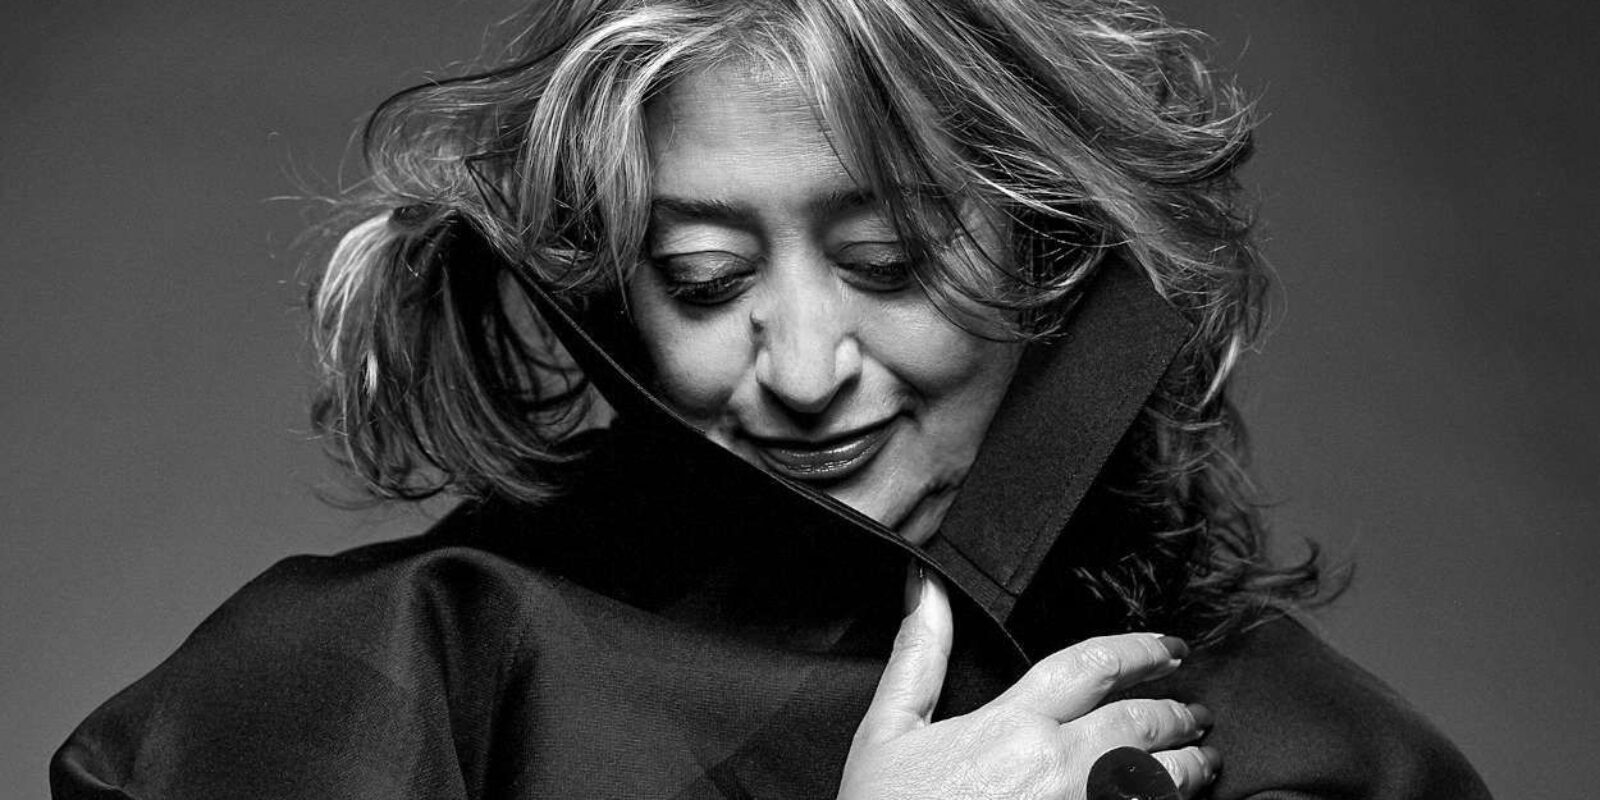 Self-Portrait of Zaha Hadid